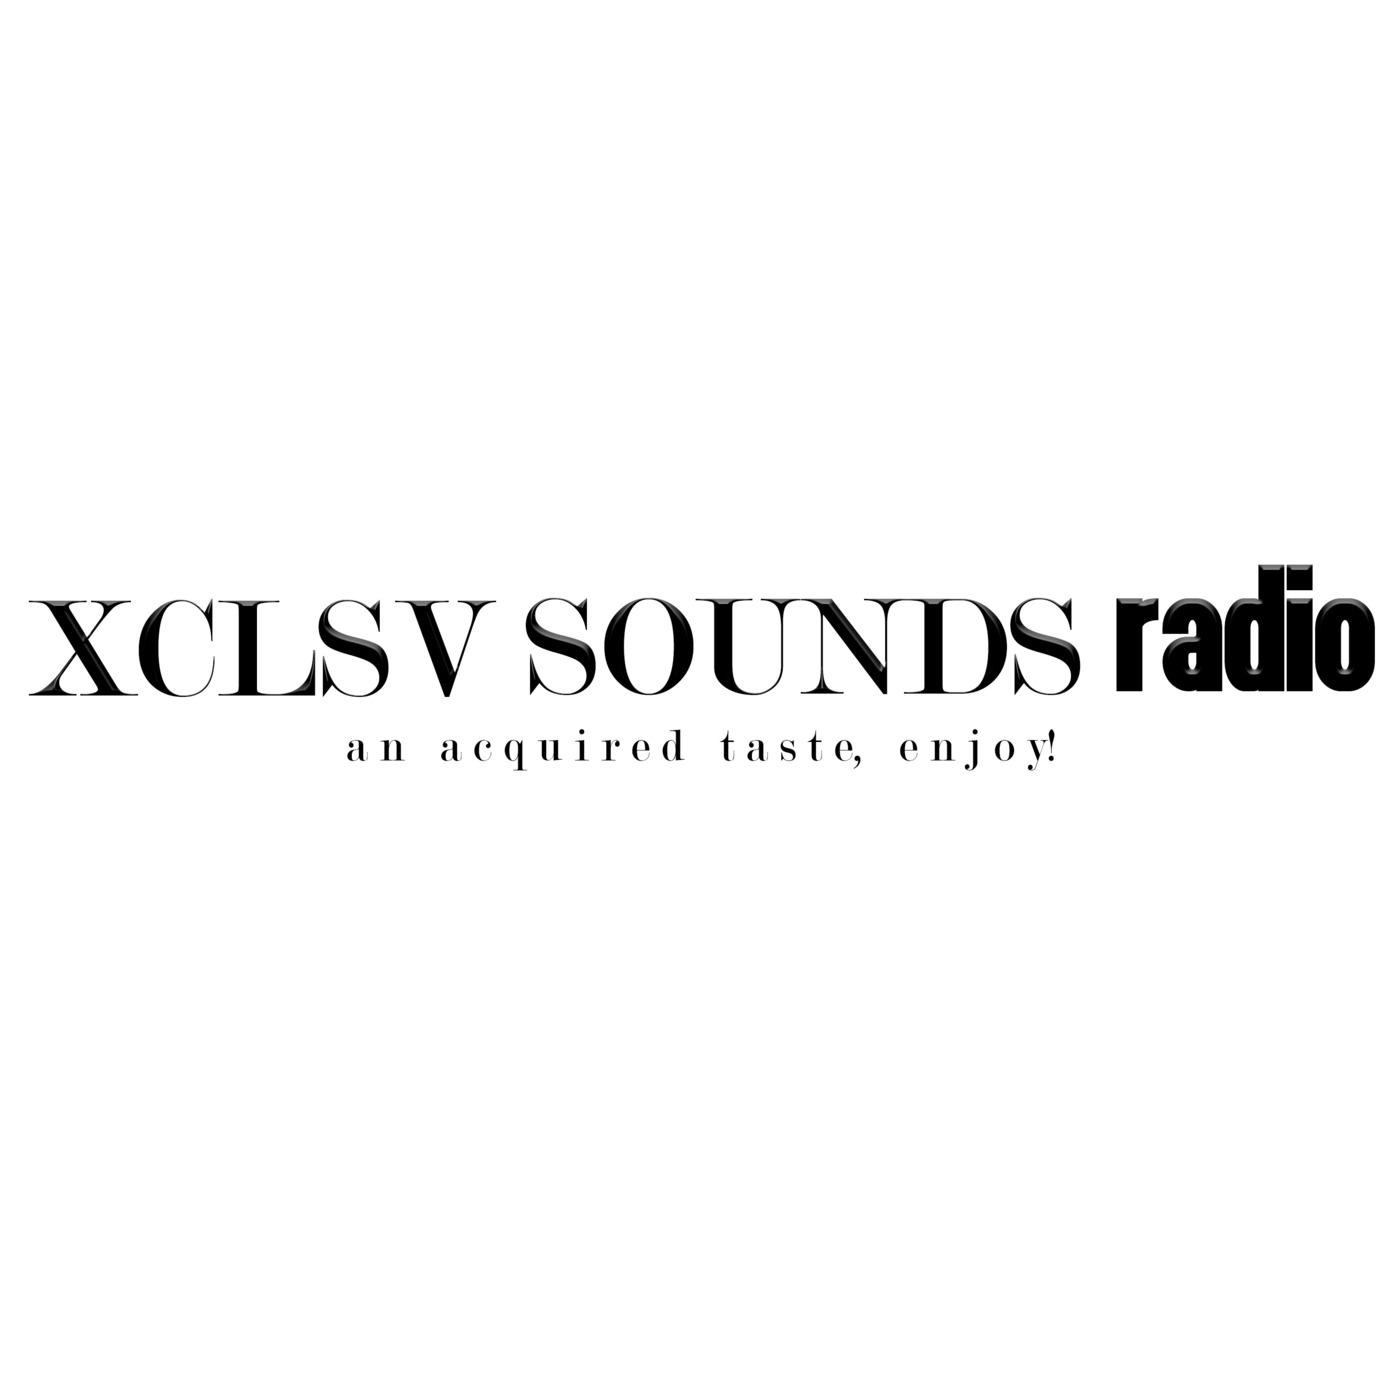 Episode 8: Show 08 Thuto XCL$V - Reprezent Radio Gue$t Mix